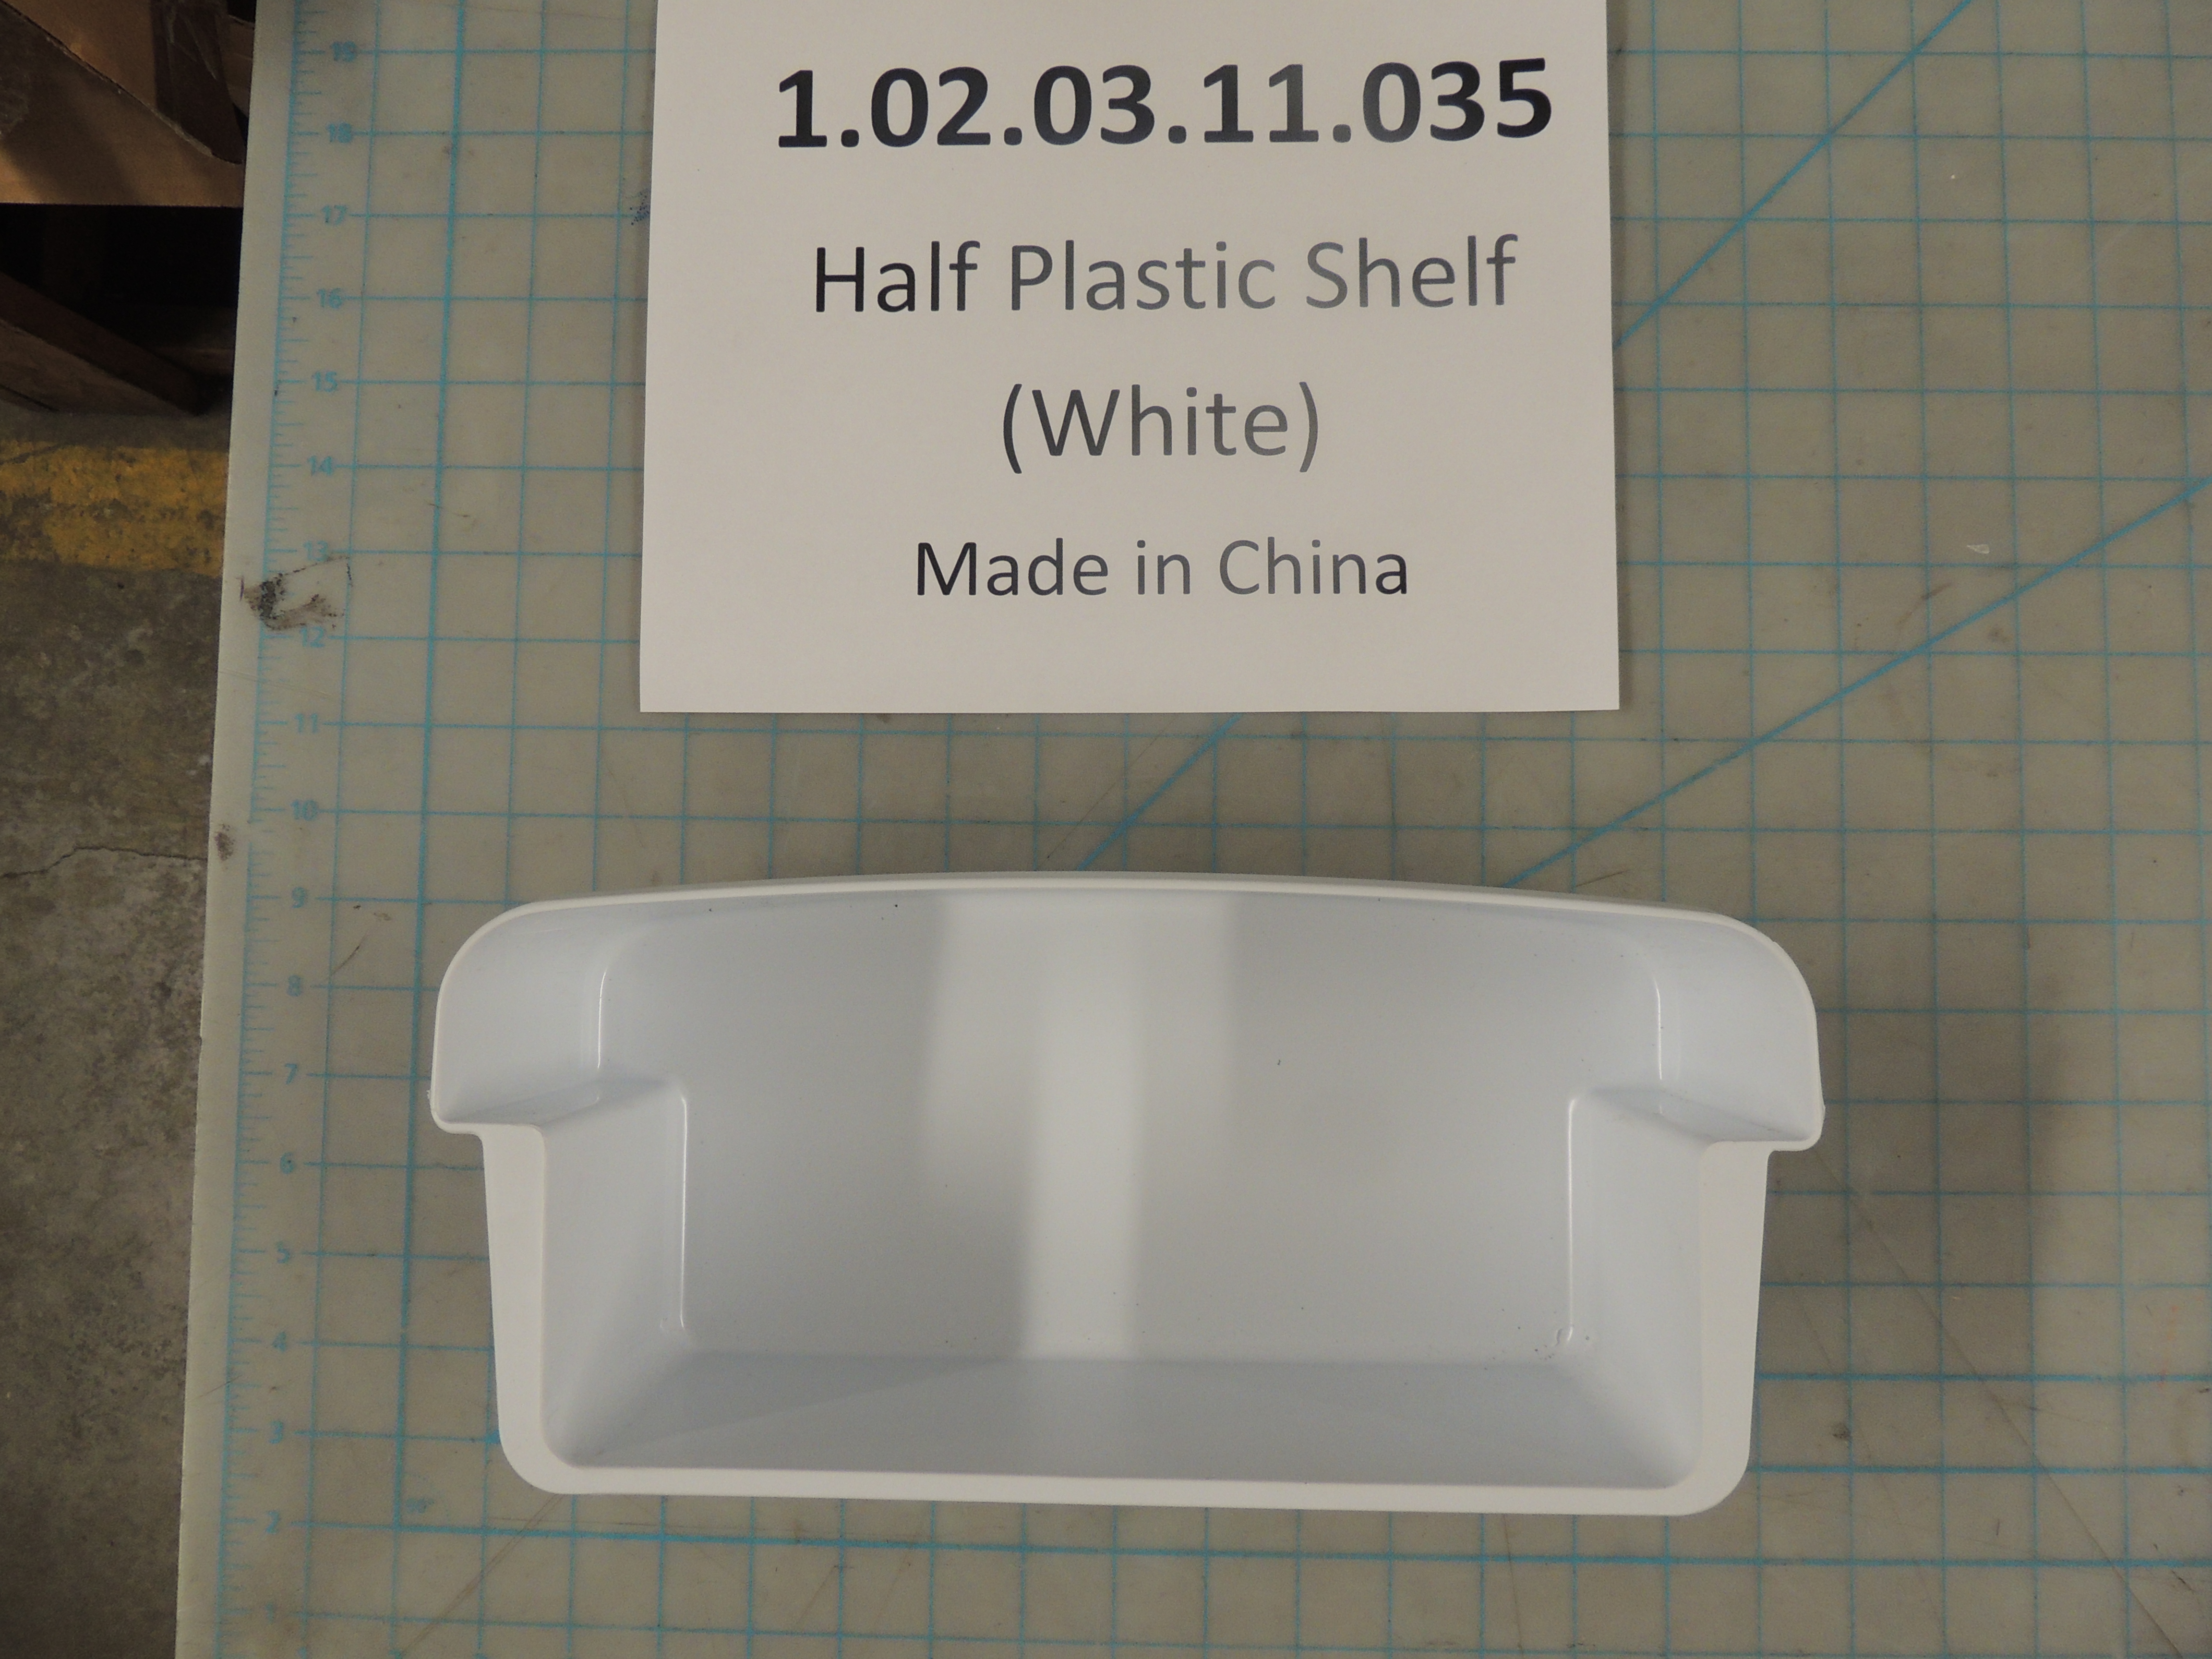 Half Plastic Shelf (White)